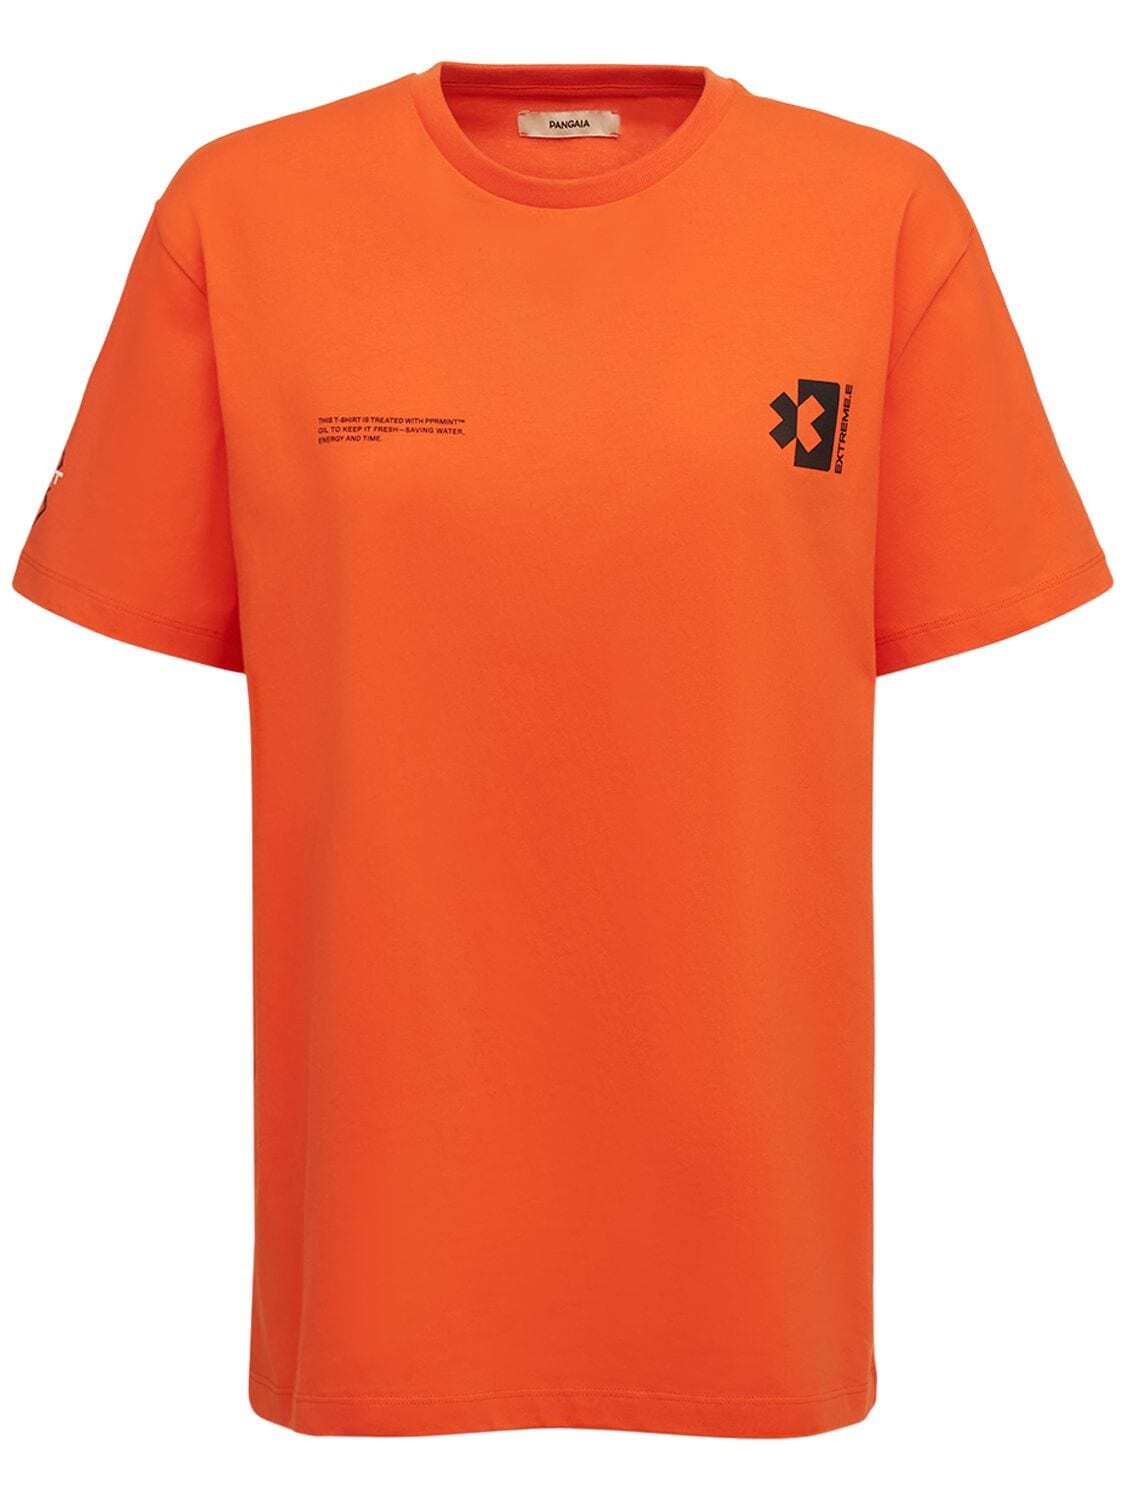 Pangaia X Extreme E Cotton T-shirt in orange